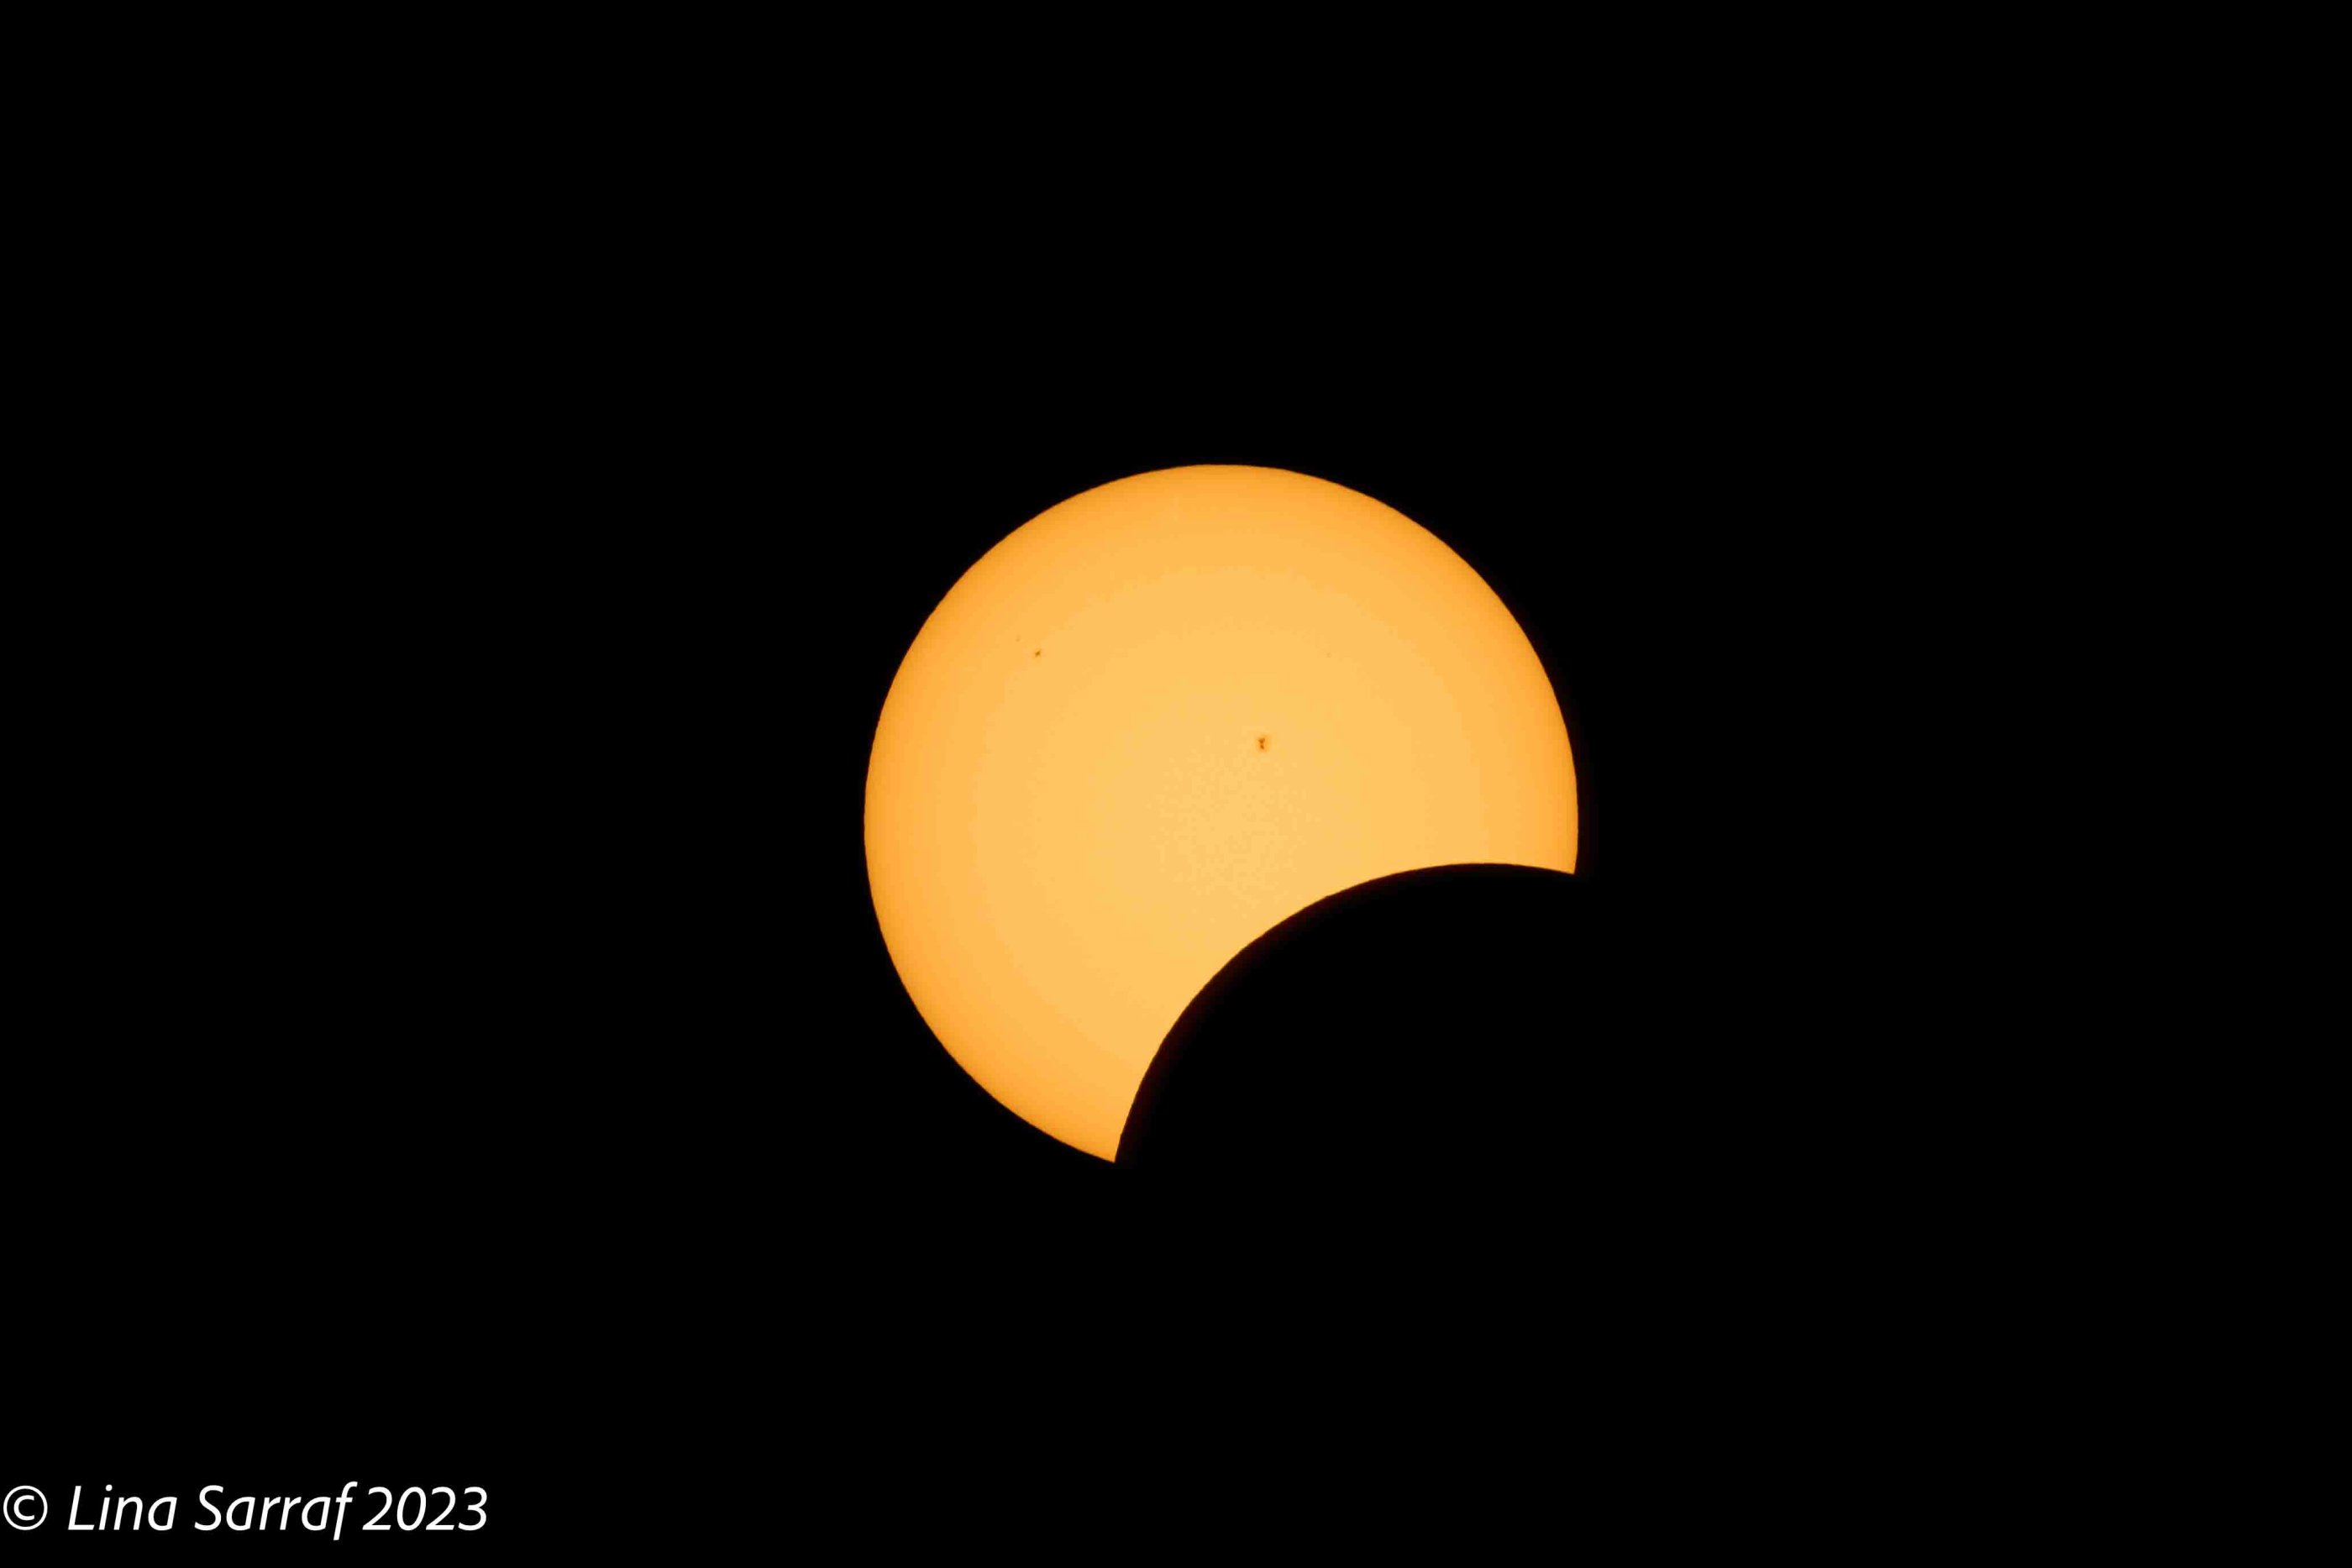  eclipse-3.jpg